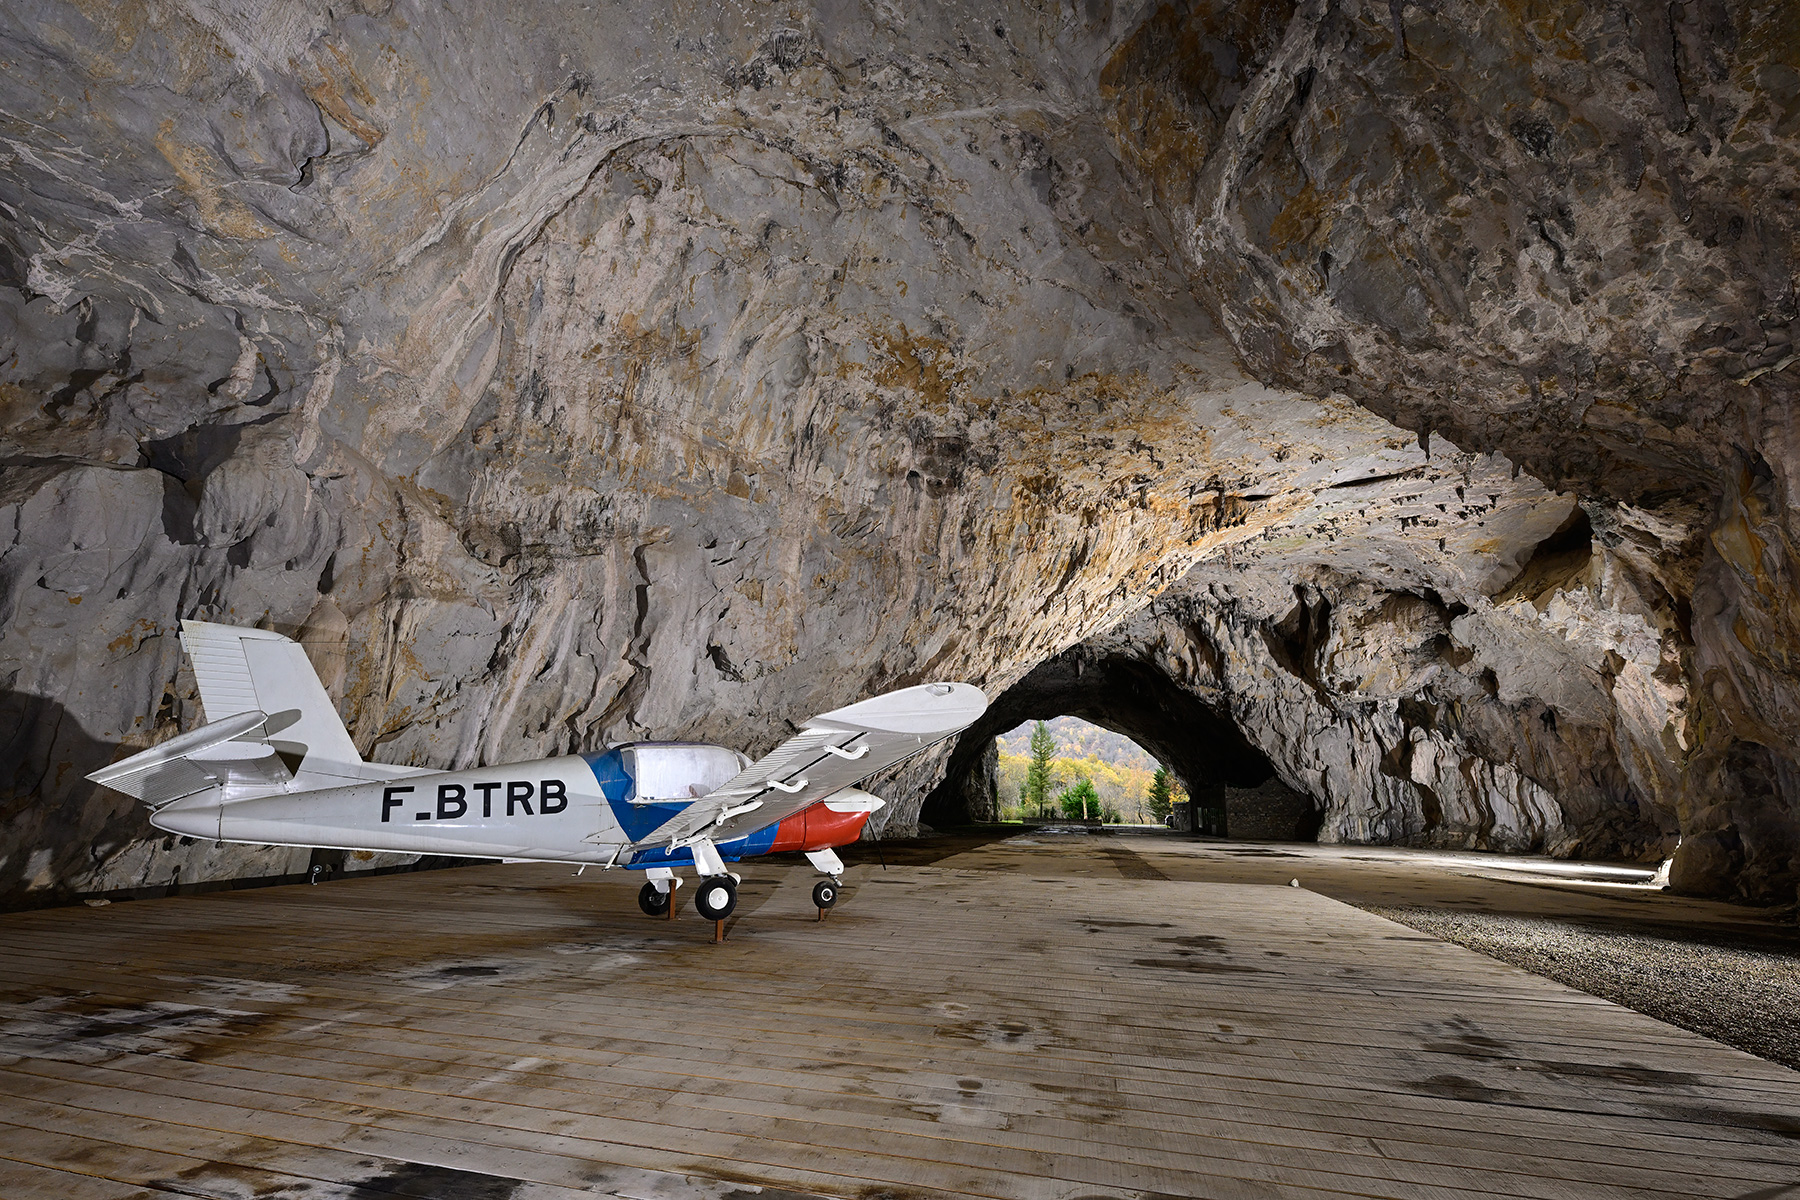 Grotte préhistorique de Bédeilhac (Ariège) - Réplique du petit avion de tourisme avec lequel le pilote d'essai George Bonnet a atterri dans la grotte en 1974 